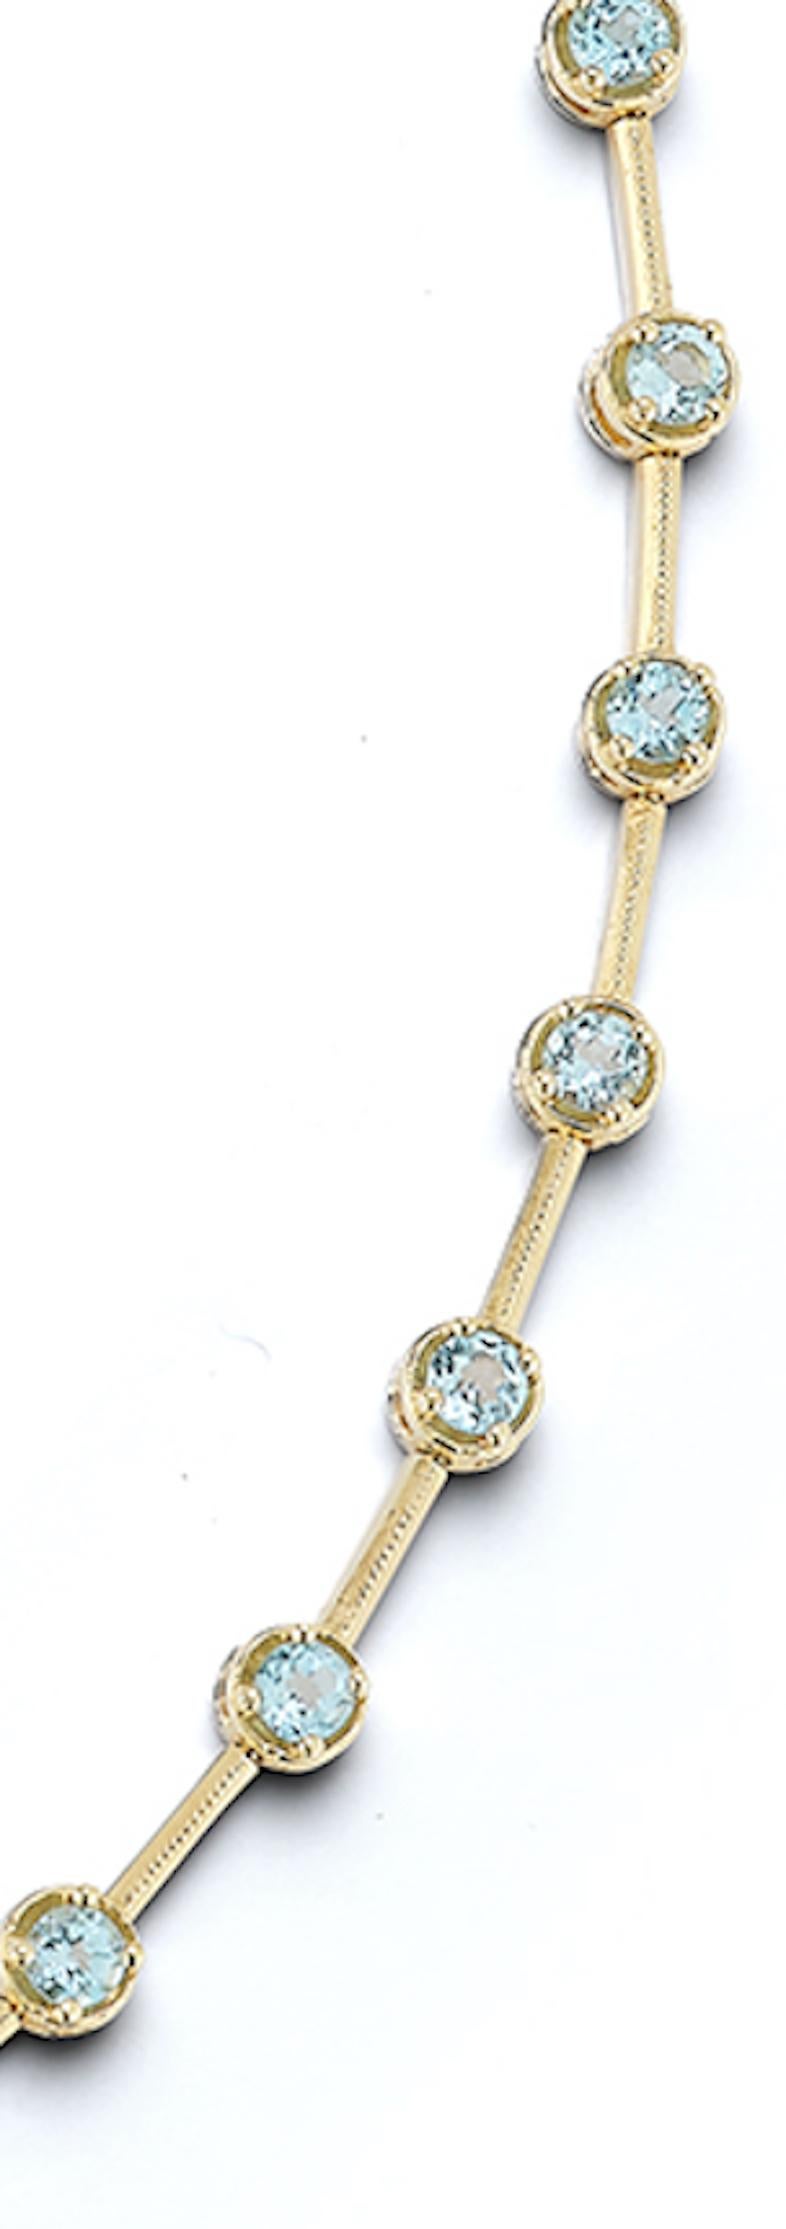 Ce collier rétro vintage en or 14k est élégant et inhabituel. Chaque topaze bleu clair sertie est divisée par une barre d'or, créant ainsi un collier inattendu. Les maillons de style barrette se trouvent à l'arrière, avec 28 topazes serties sur le